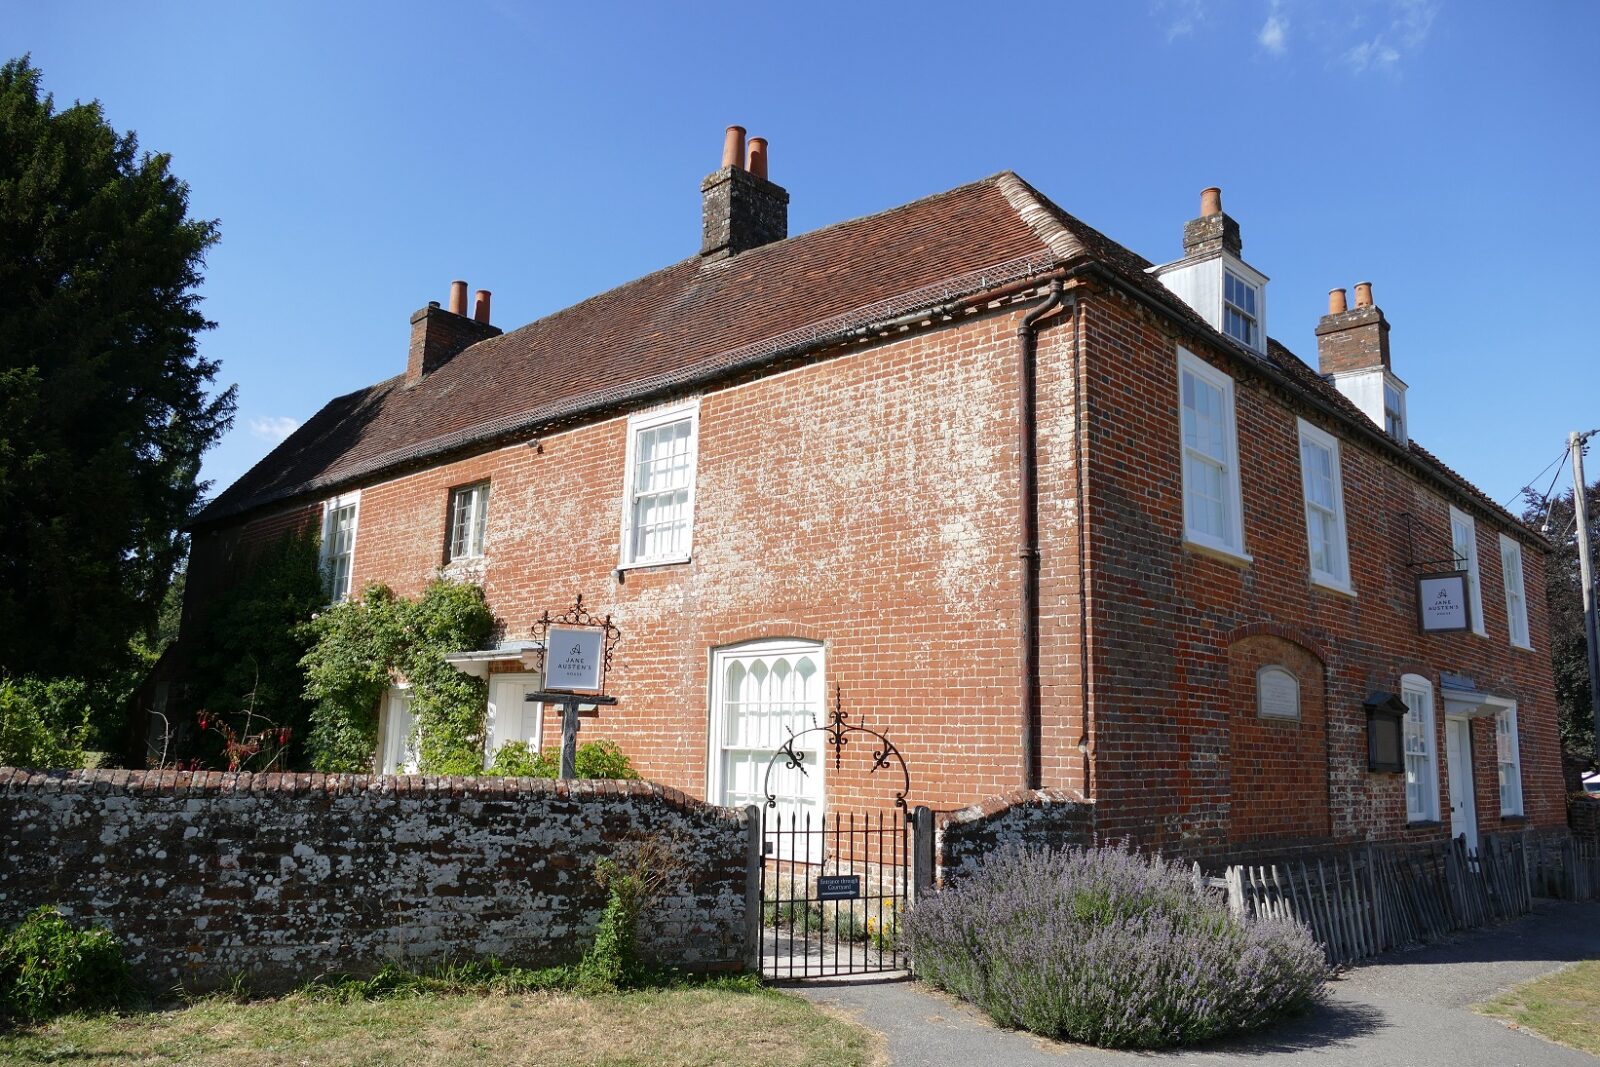 Jane Austen's House in the summer